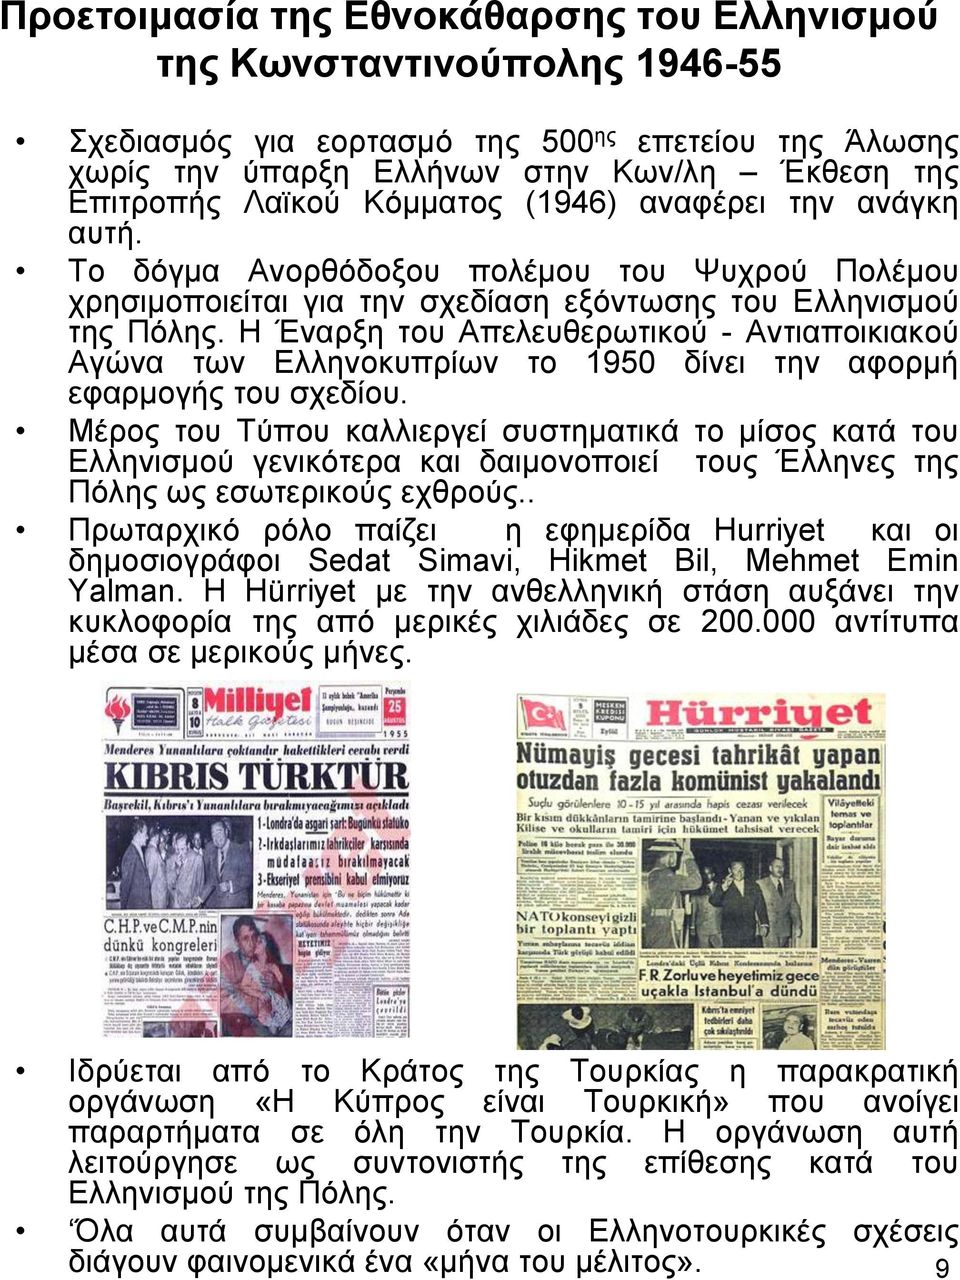 Η Έναρξη του Απελευθερωτικού - Αντιαποικιακού Αγώνα των Ελληνοκυπρίων το 1950 δίνει την αφορμή εφαρμογής του σχεδίου.